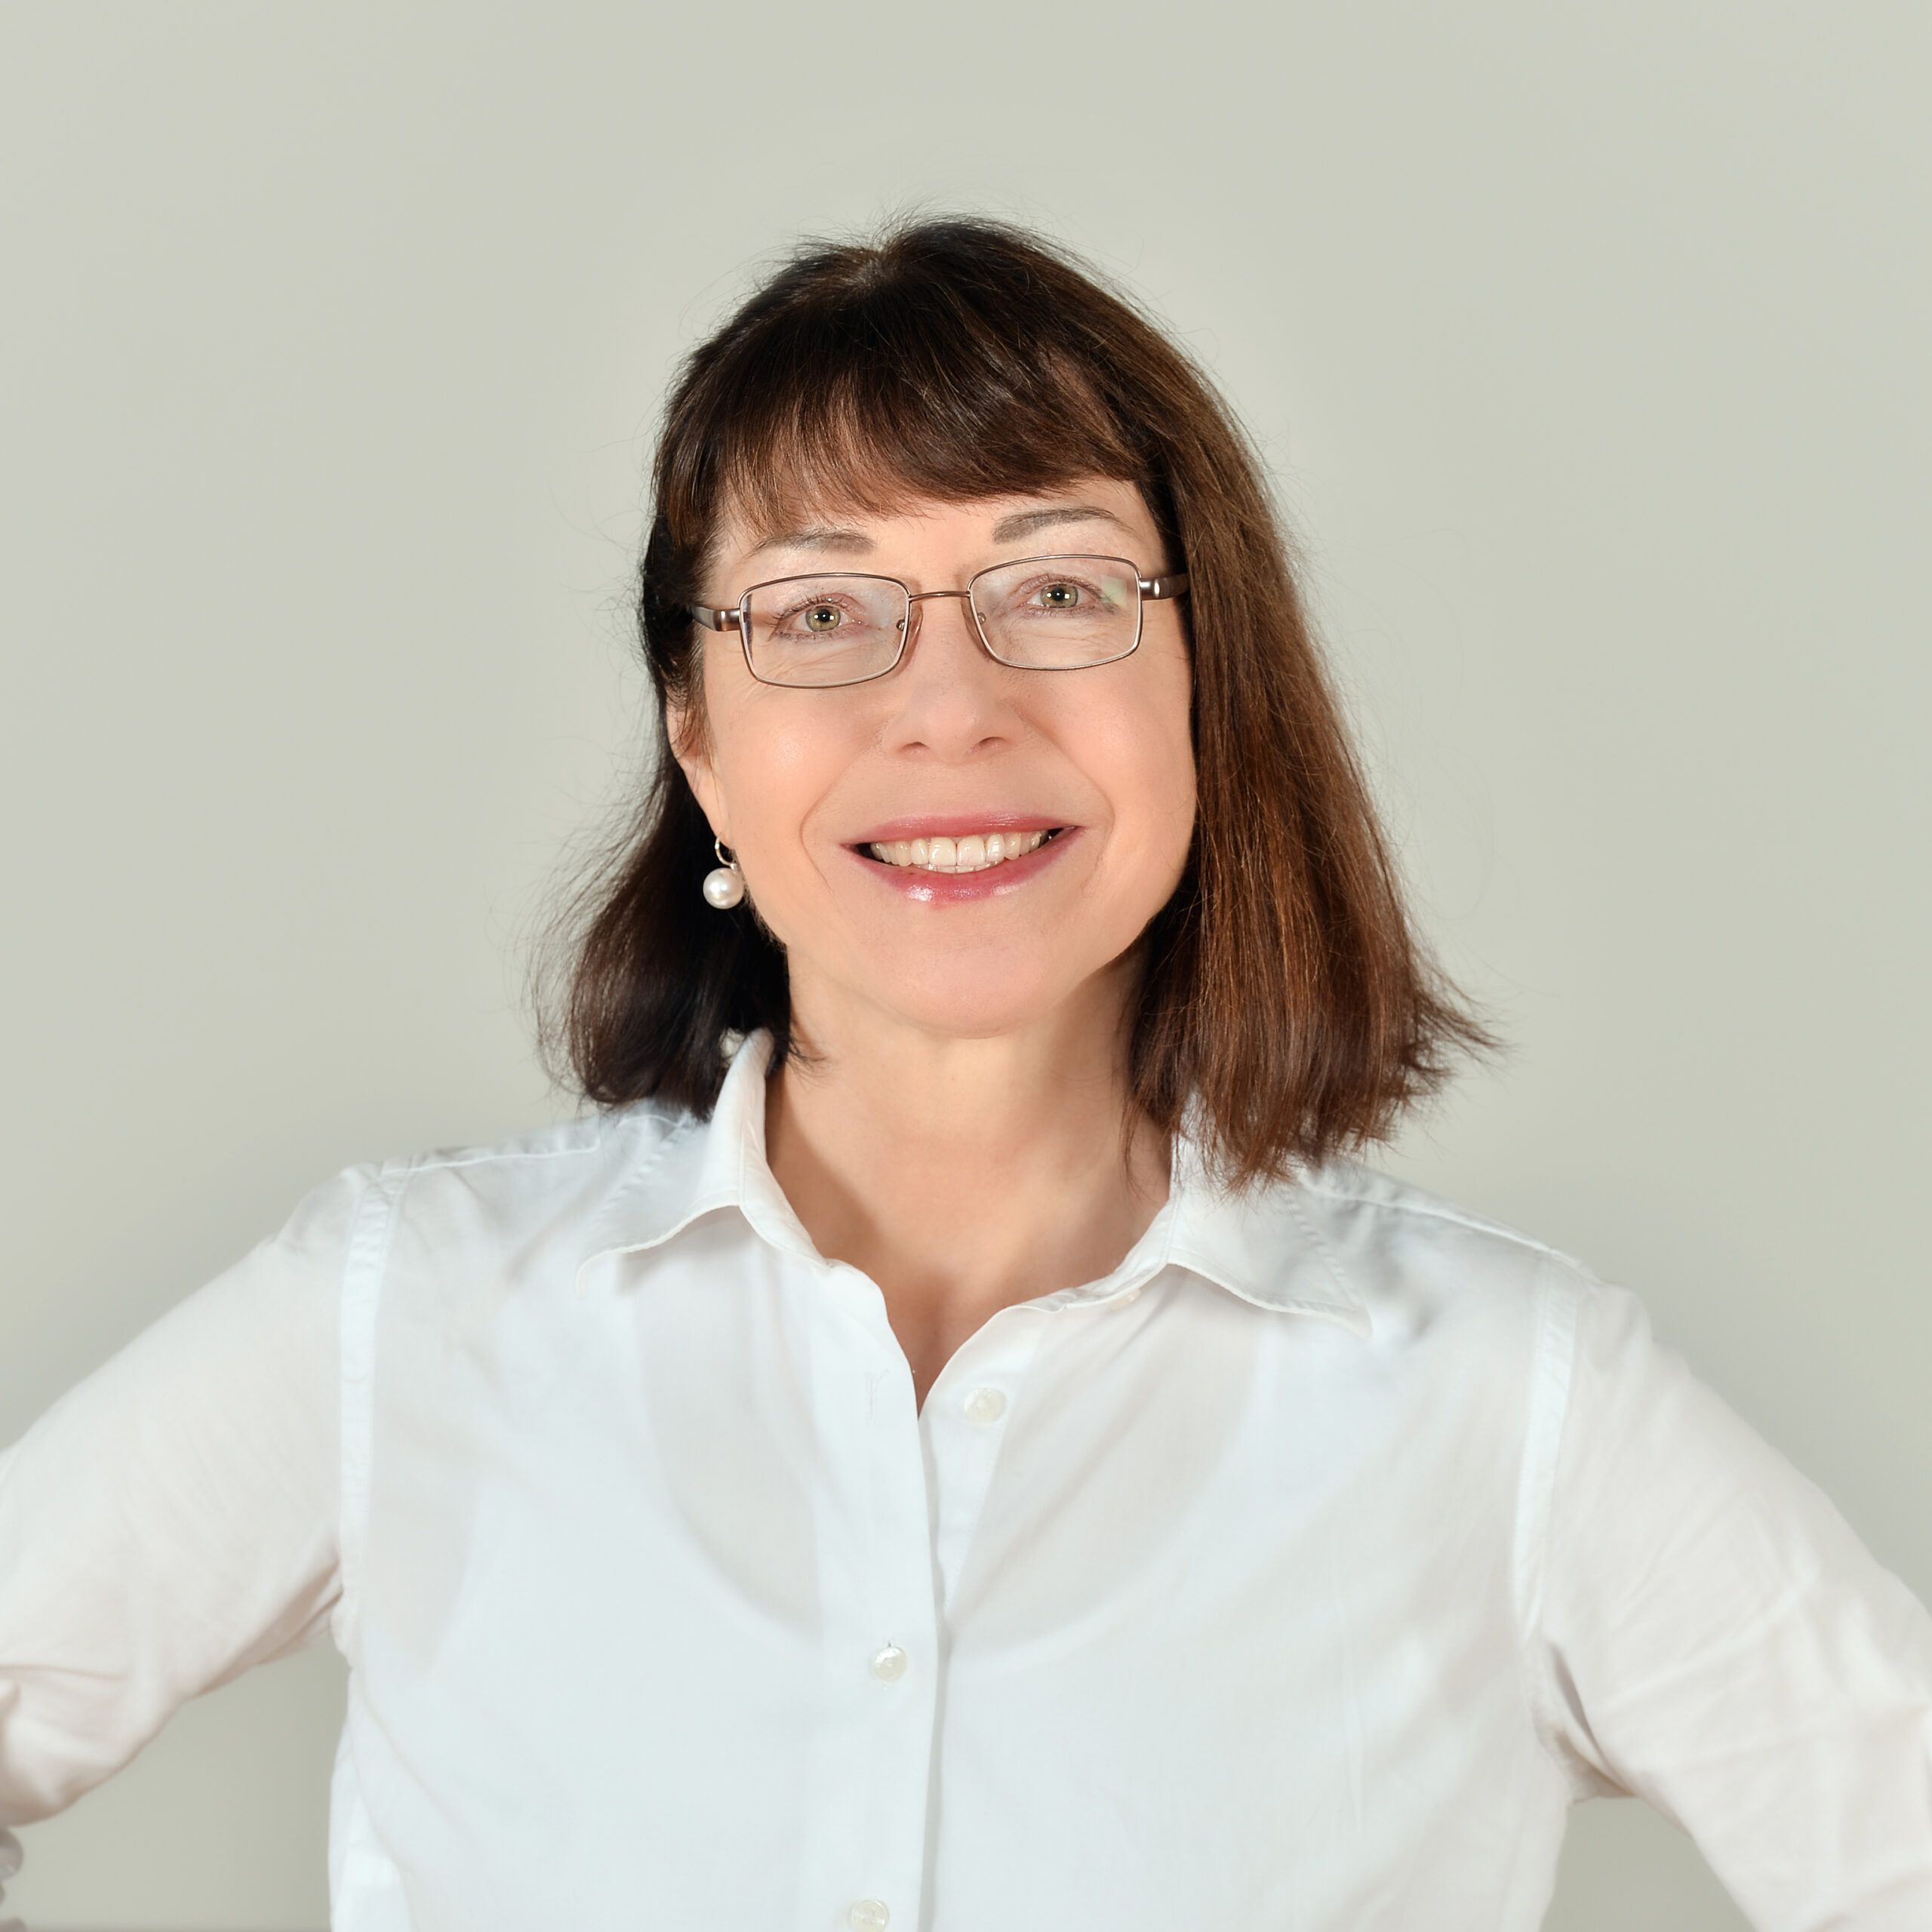 Profilbild von Kristin Reinke in einer weißen Bluse.